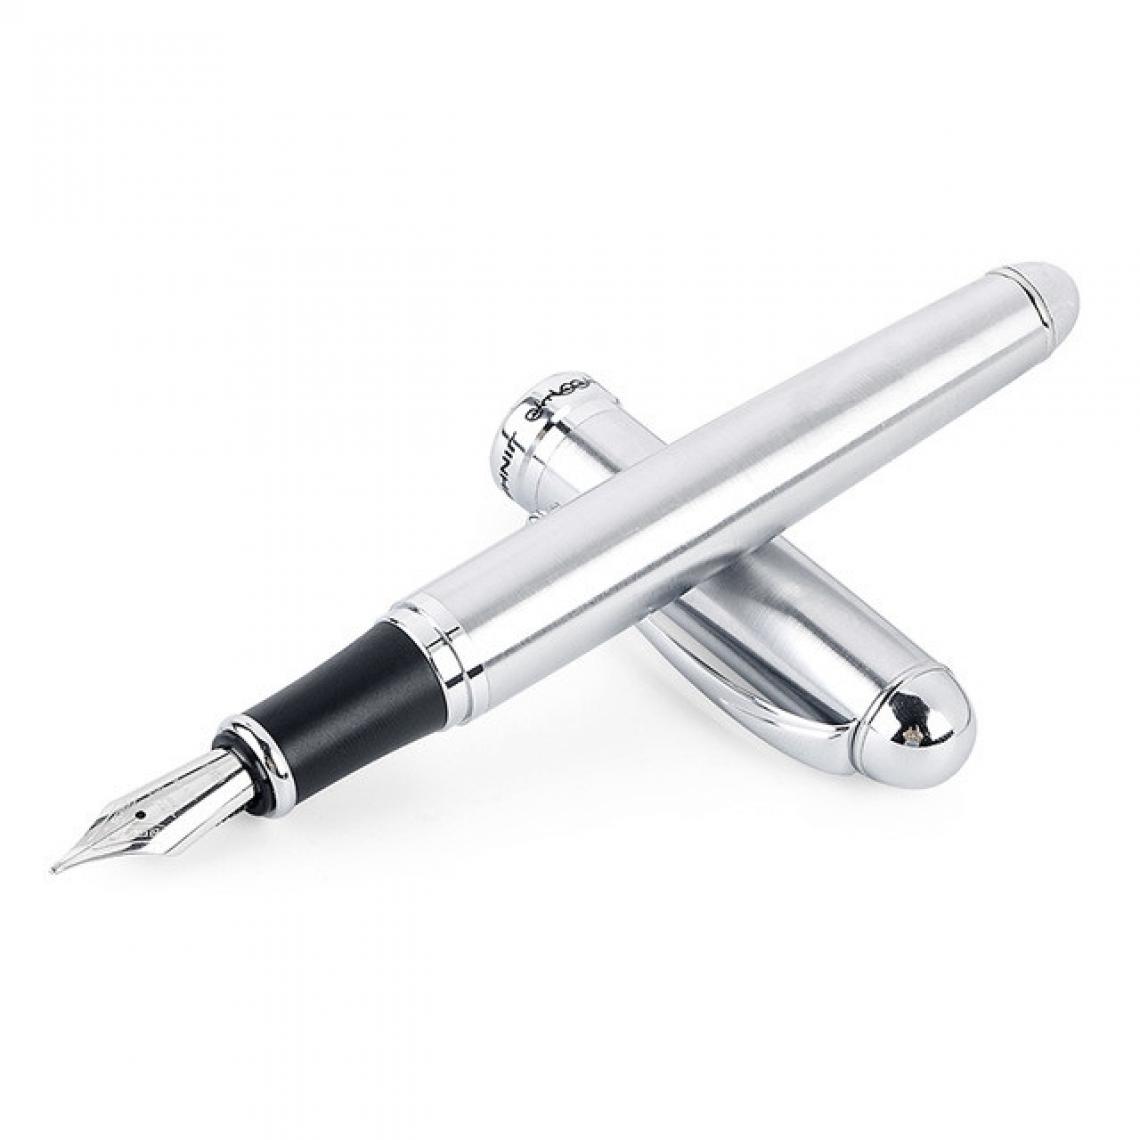 Wewoo - X750 papeterie stylo-plume en acier inoxydable plume moyenne stylos encre cadeau école cadeautaille 0.5mm Argent - Accessoires Bureau